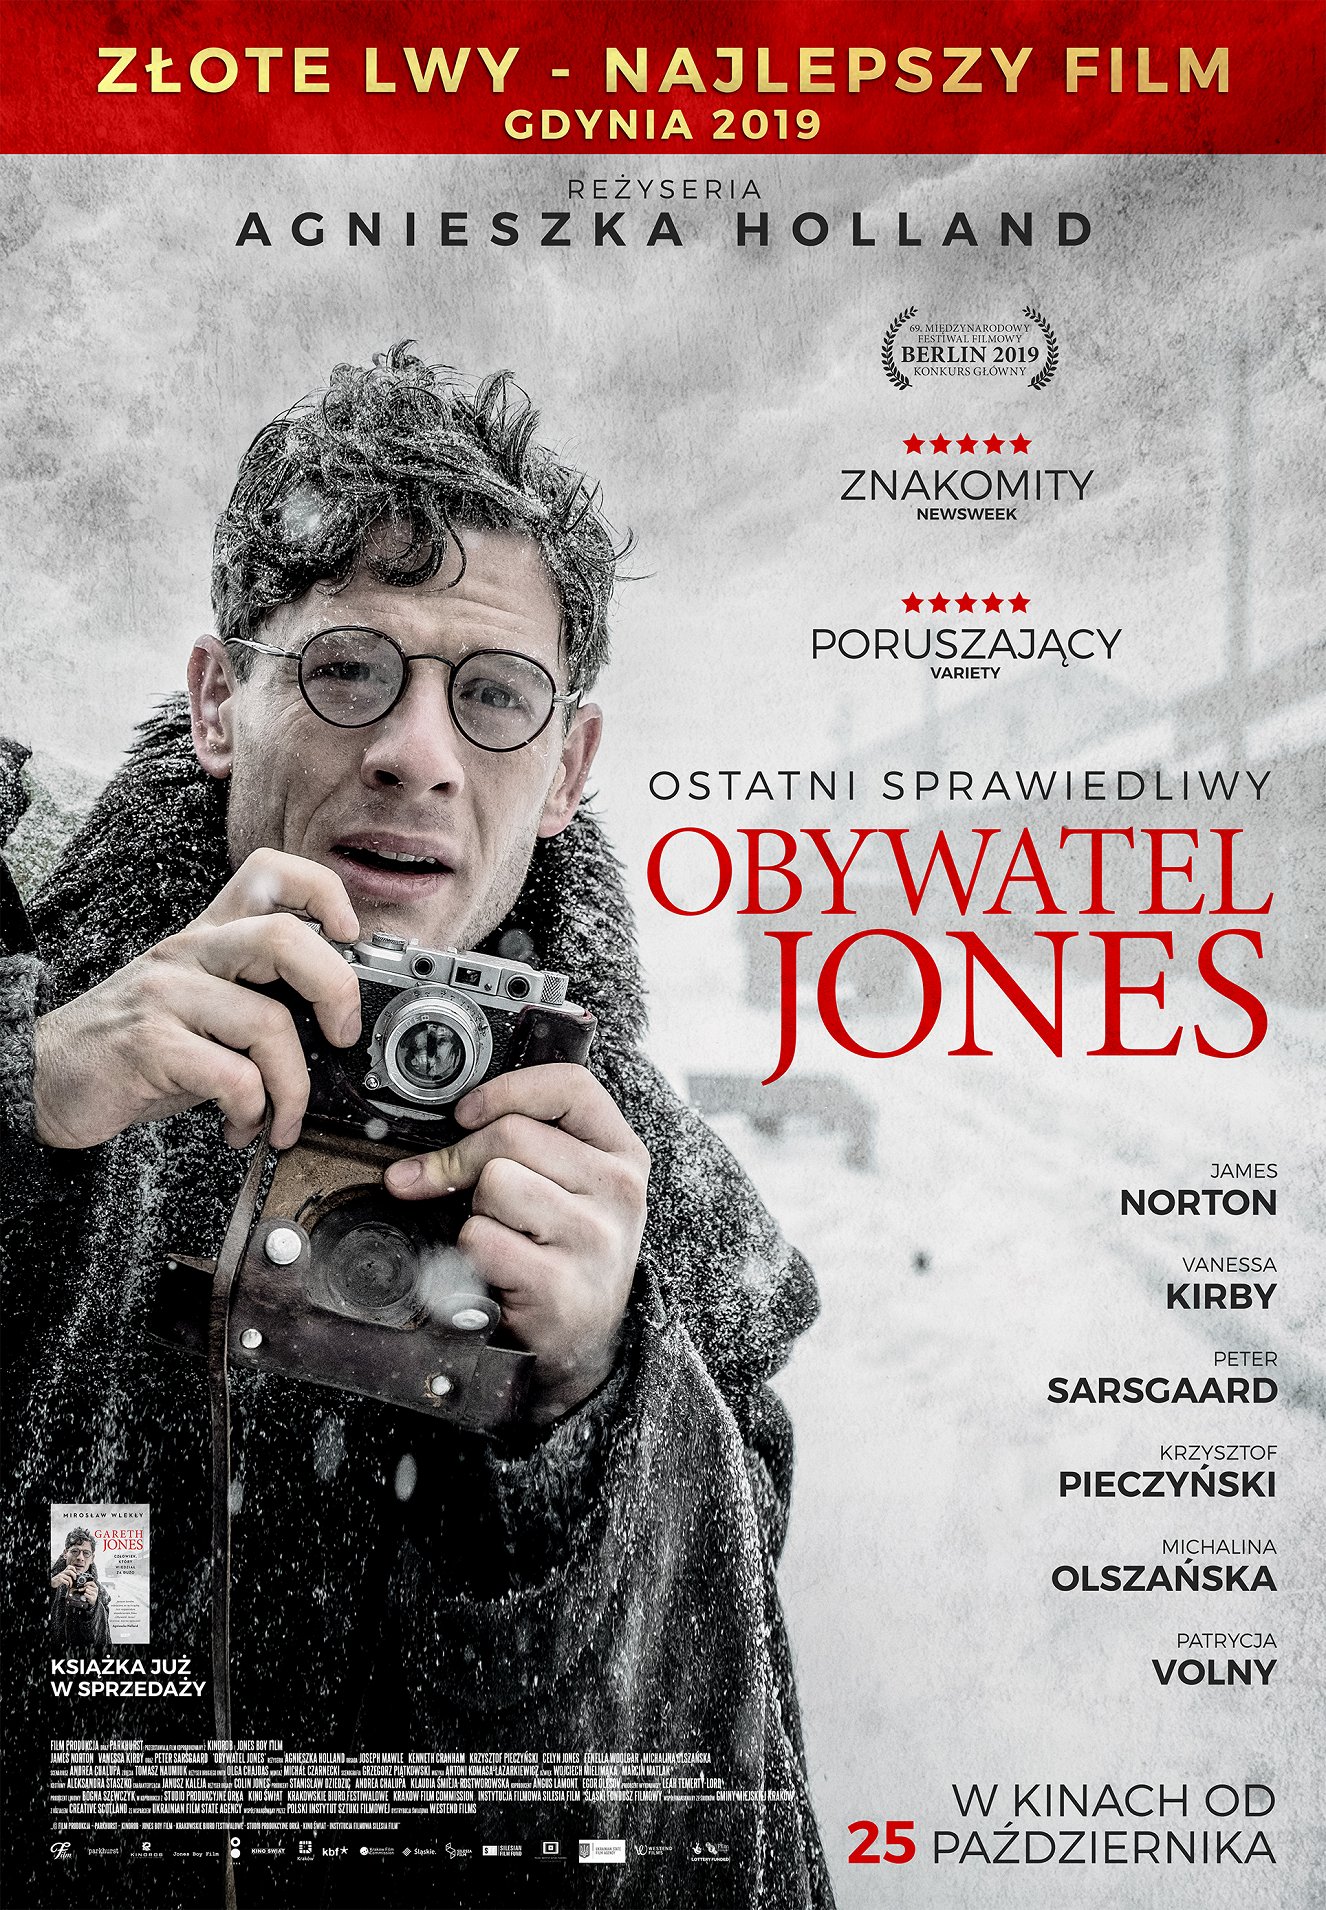 Stiahni si Filmy CZ/SK dabing Pan Jones / Obywatel Jones (2019)[WEB-DL][1080p] = CSFD 66%